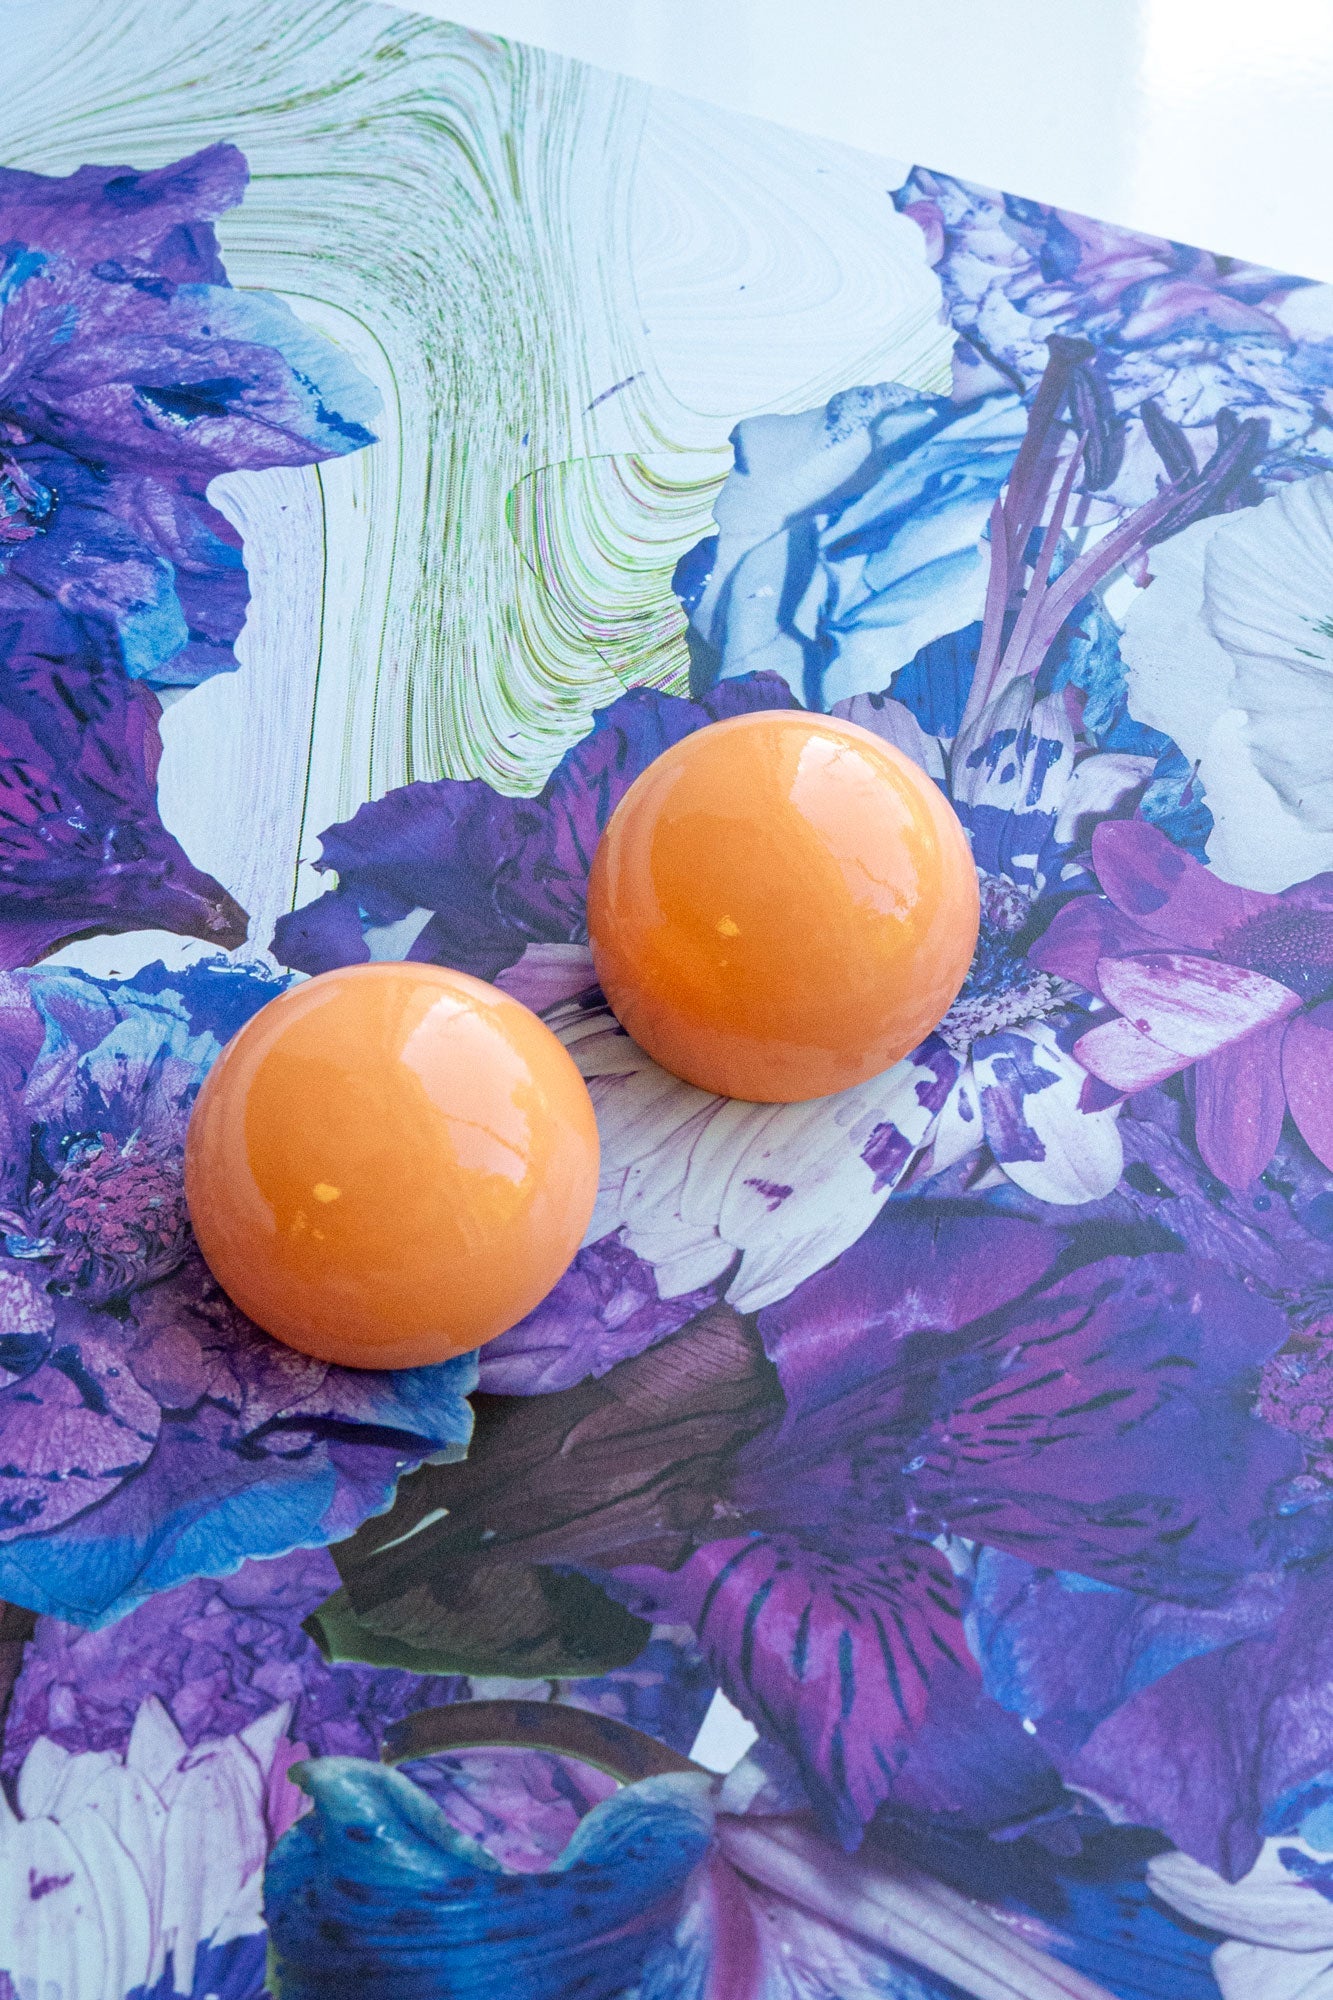 Gaia Earrings in Apricot Dream